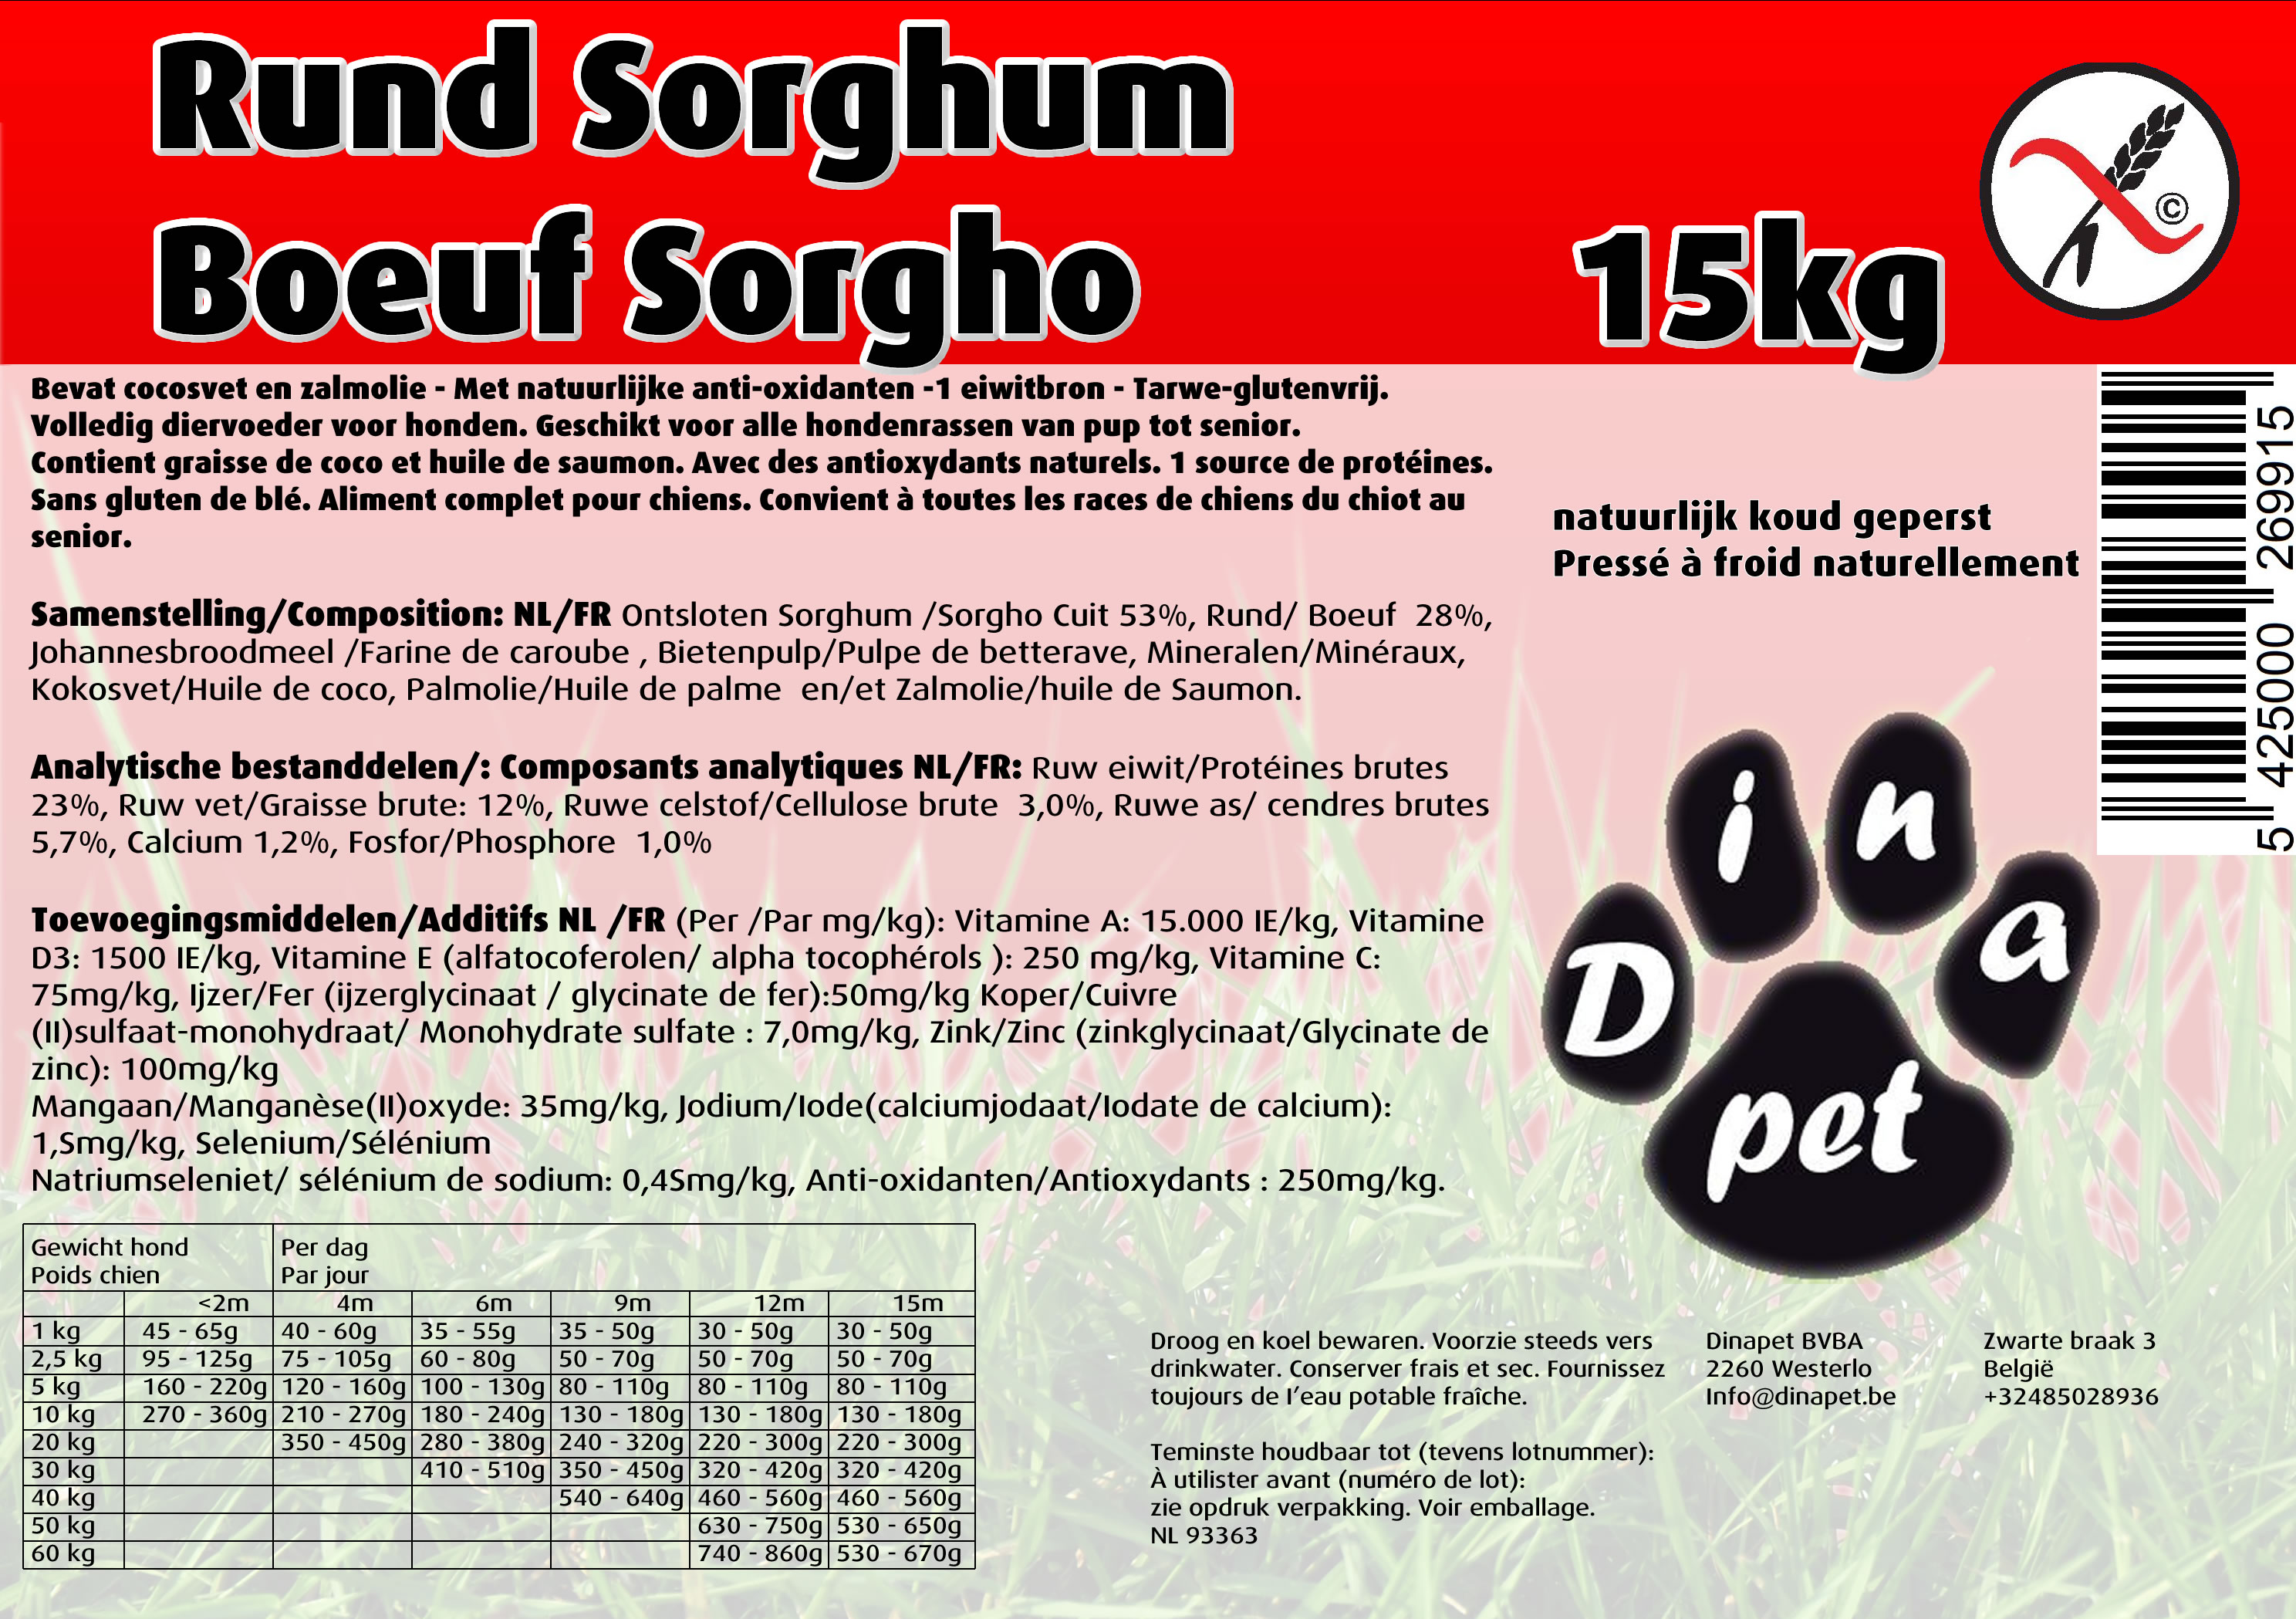 Rund Sorghum